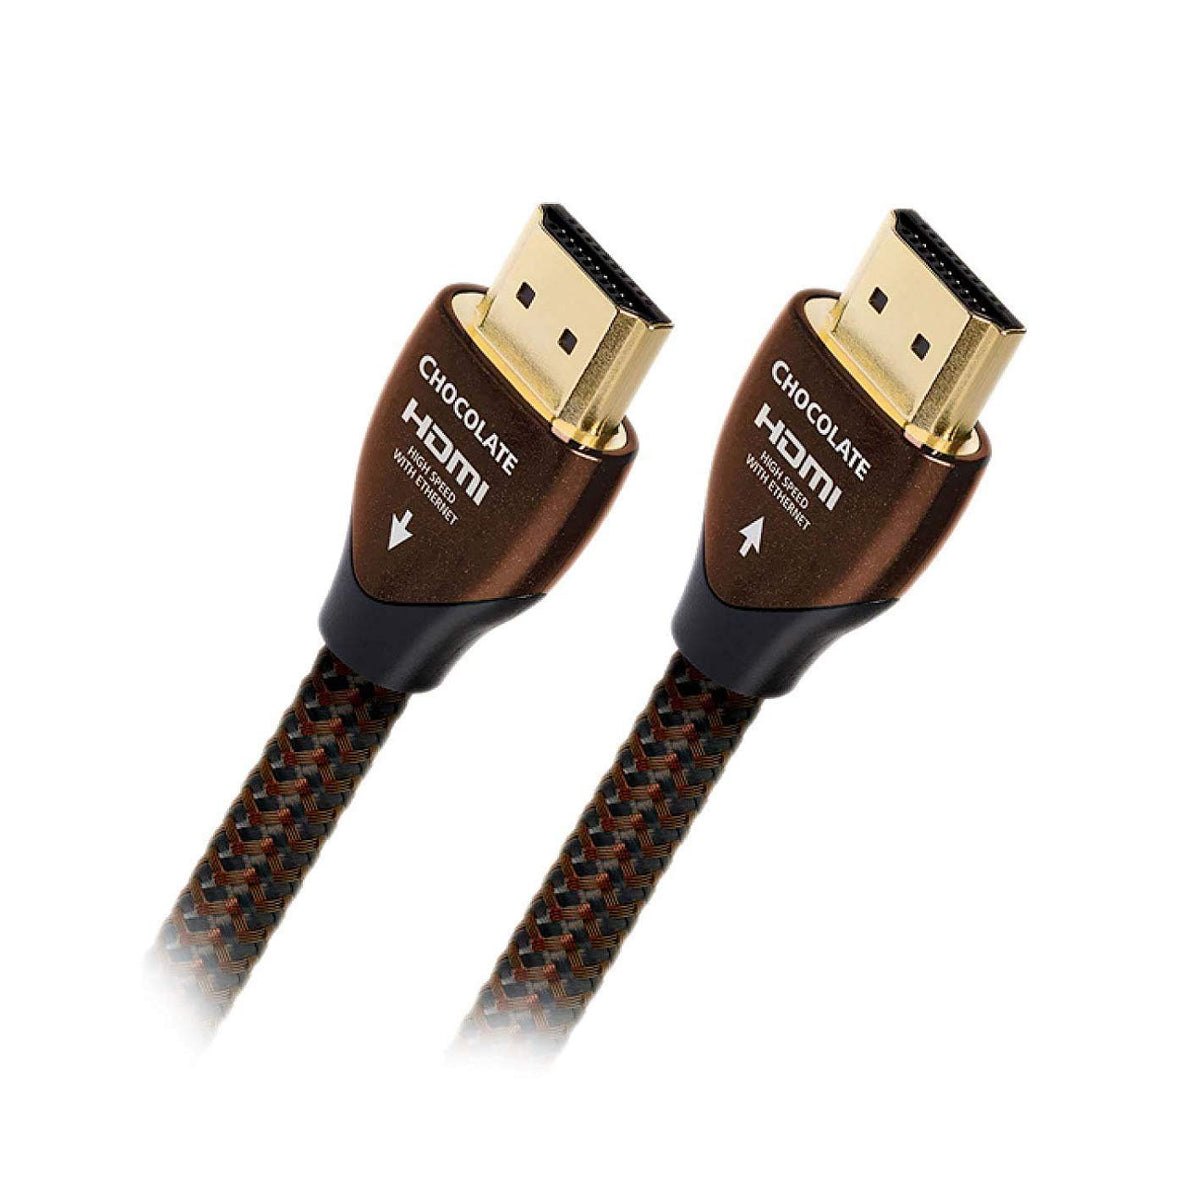 AudioQuest Chocolate - 4K HDMI Cable - AVStore